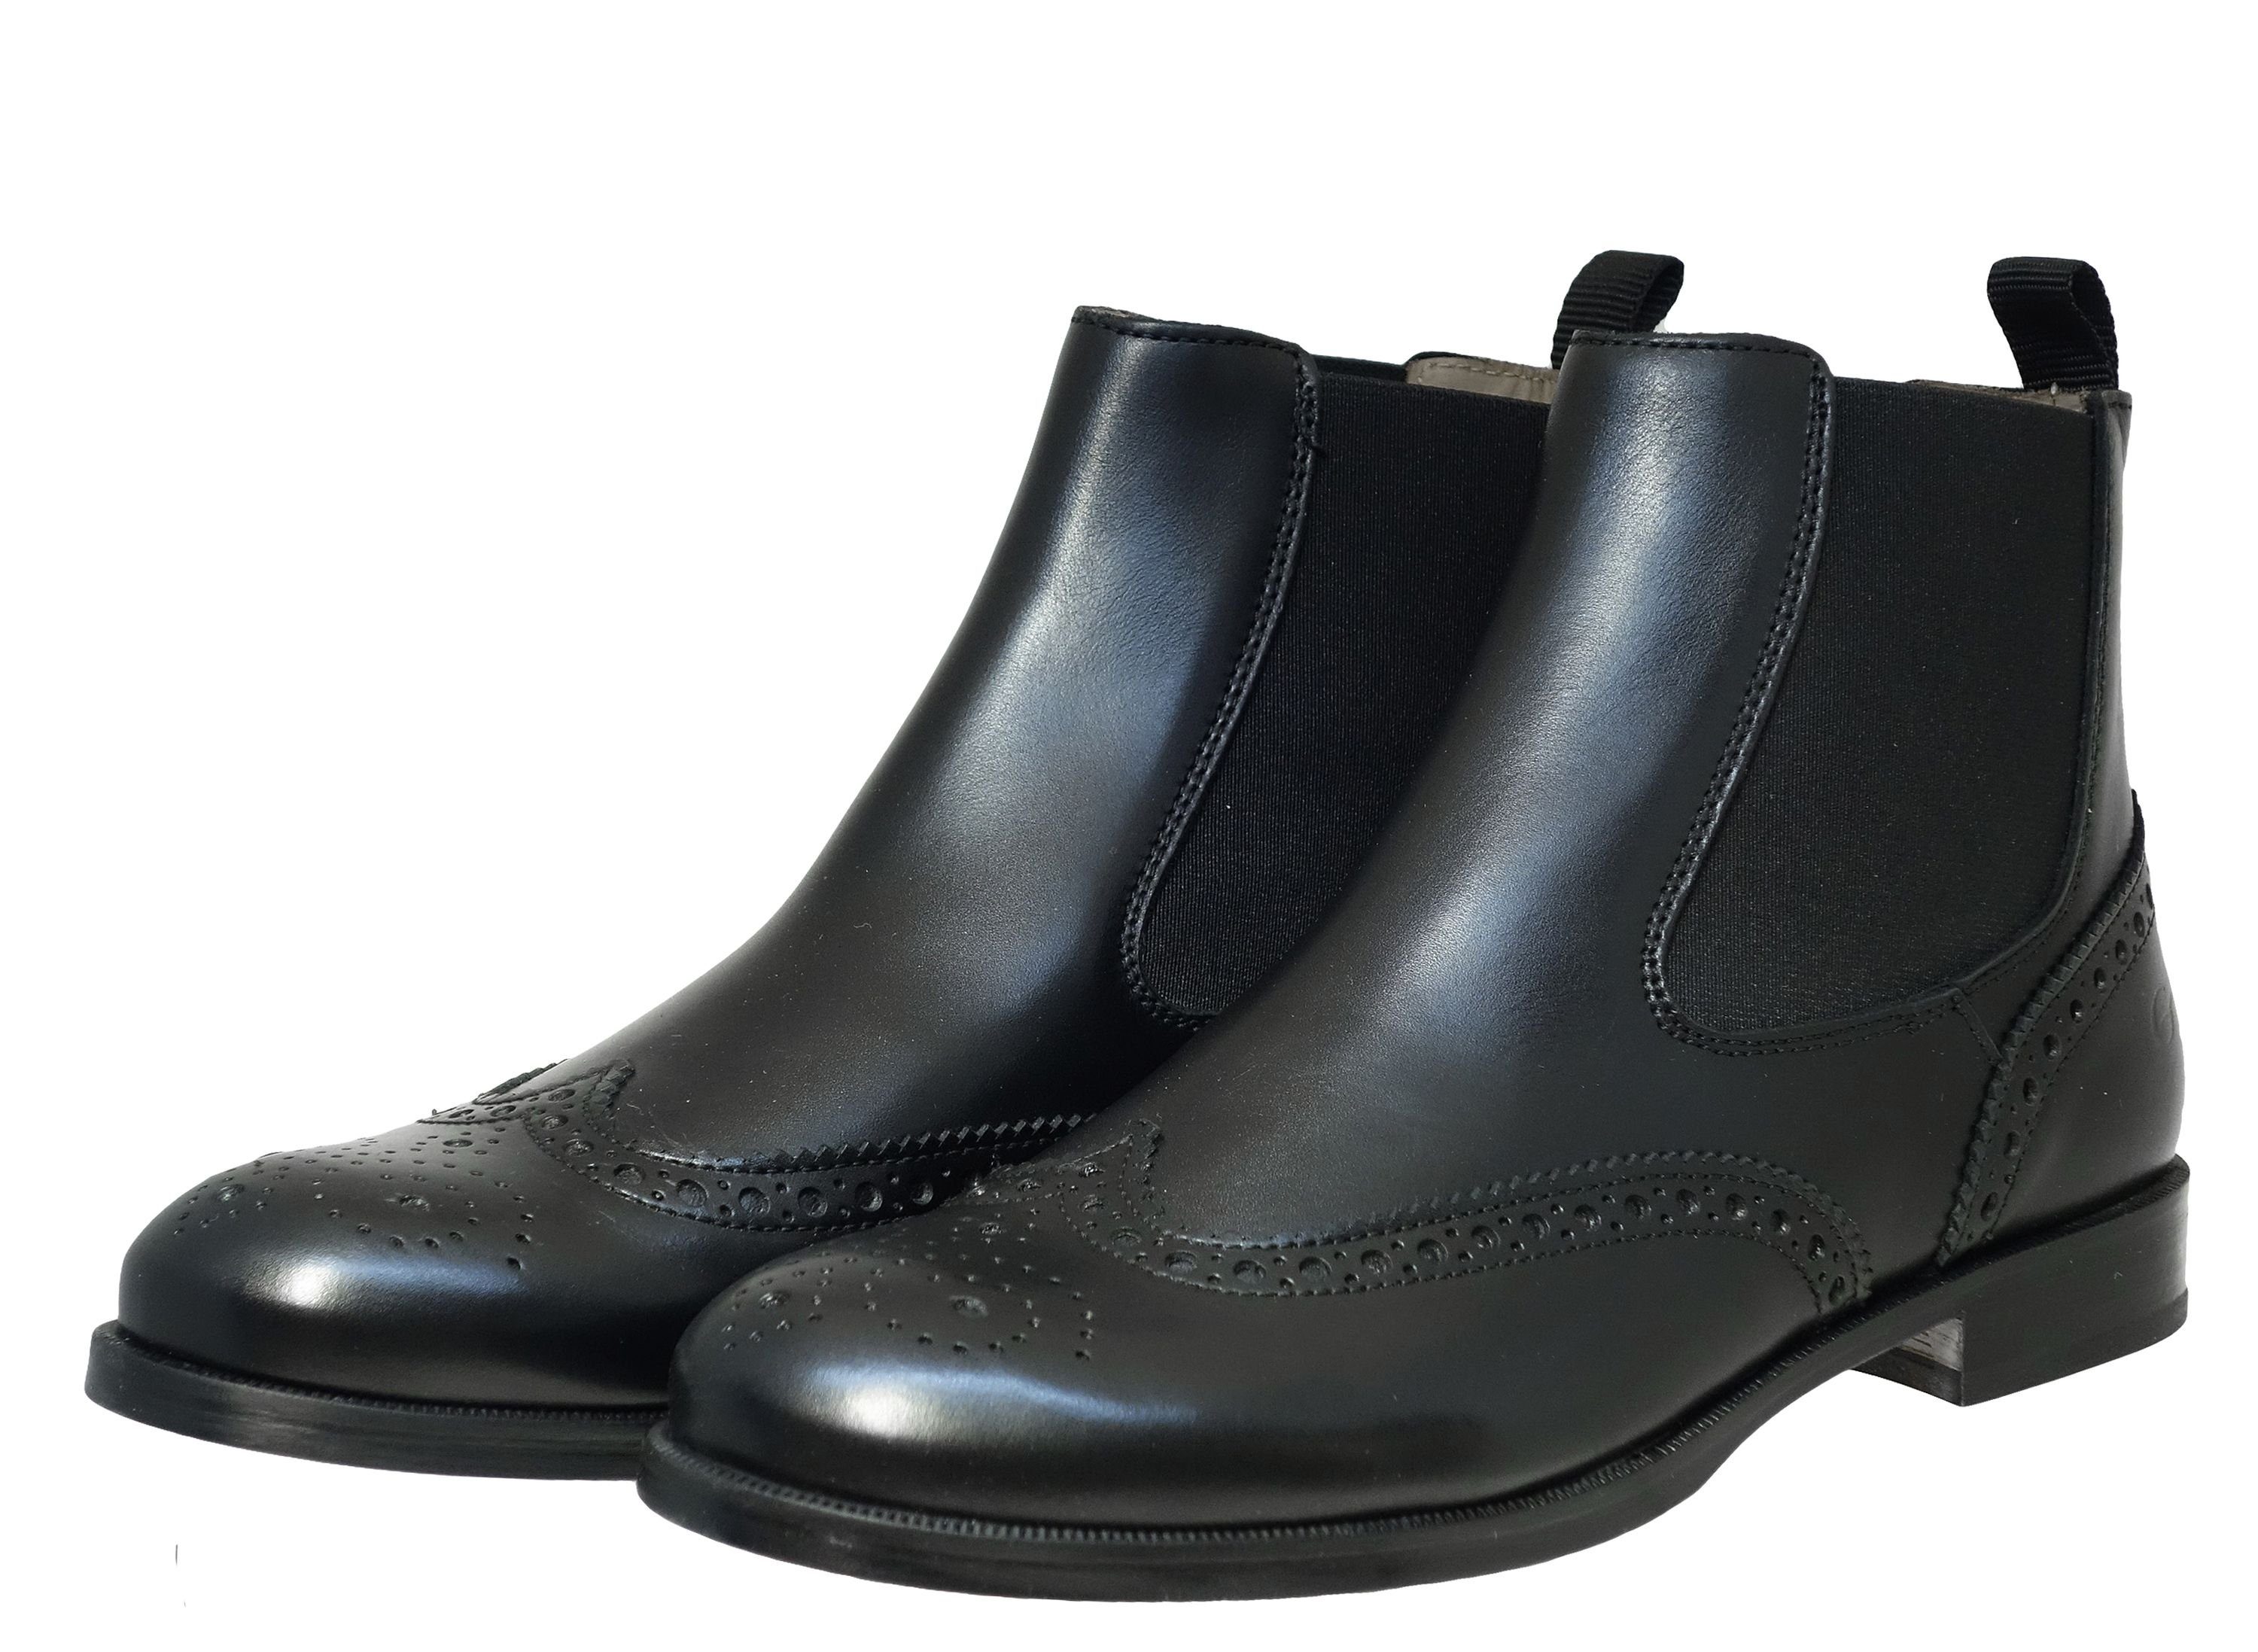 Gallucci Gallucci 5078 Stiefeletten Chelsea Boots Leder Budapester Schwarz  Schnürstiefelette